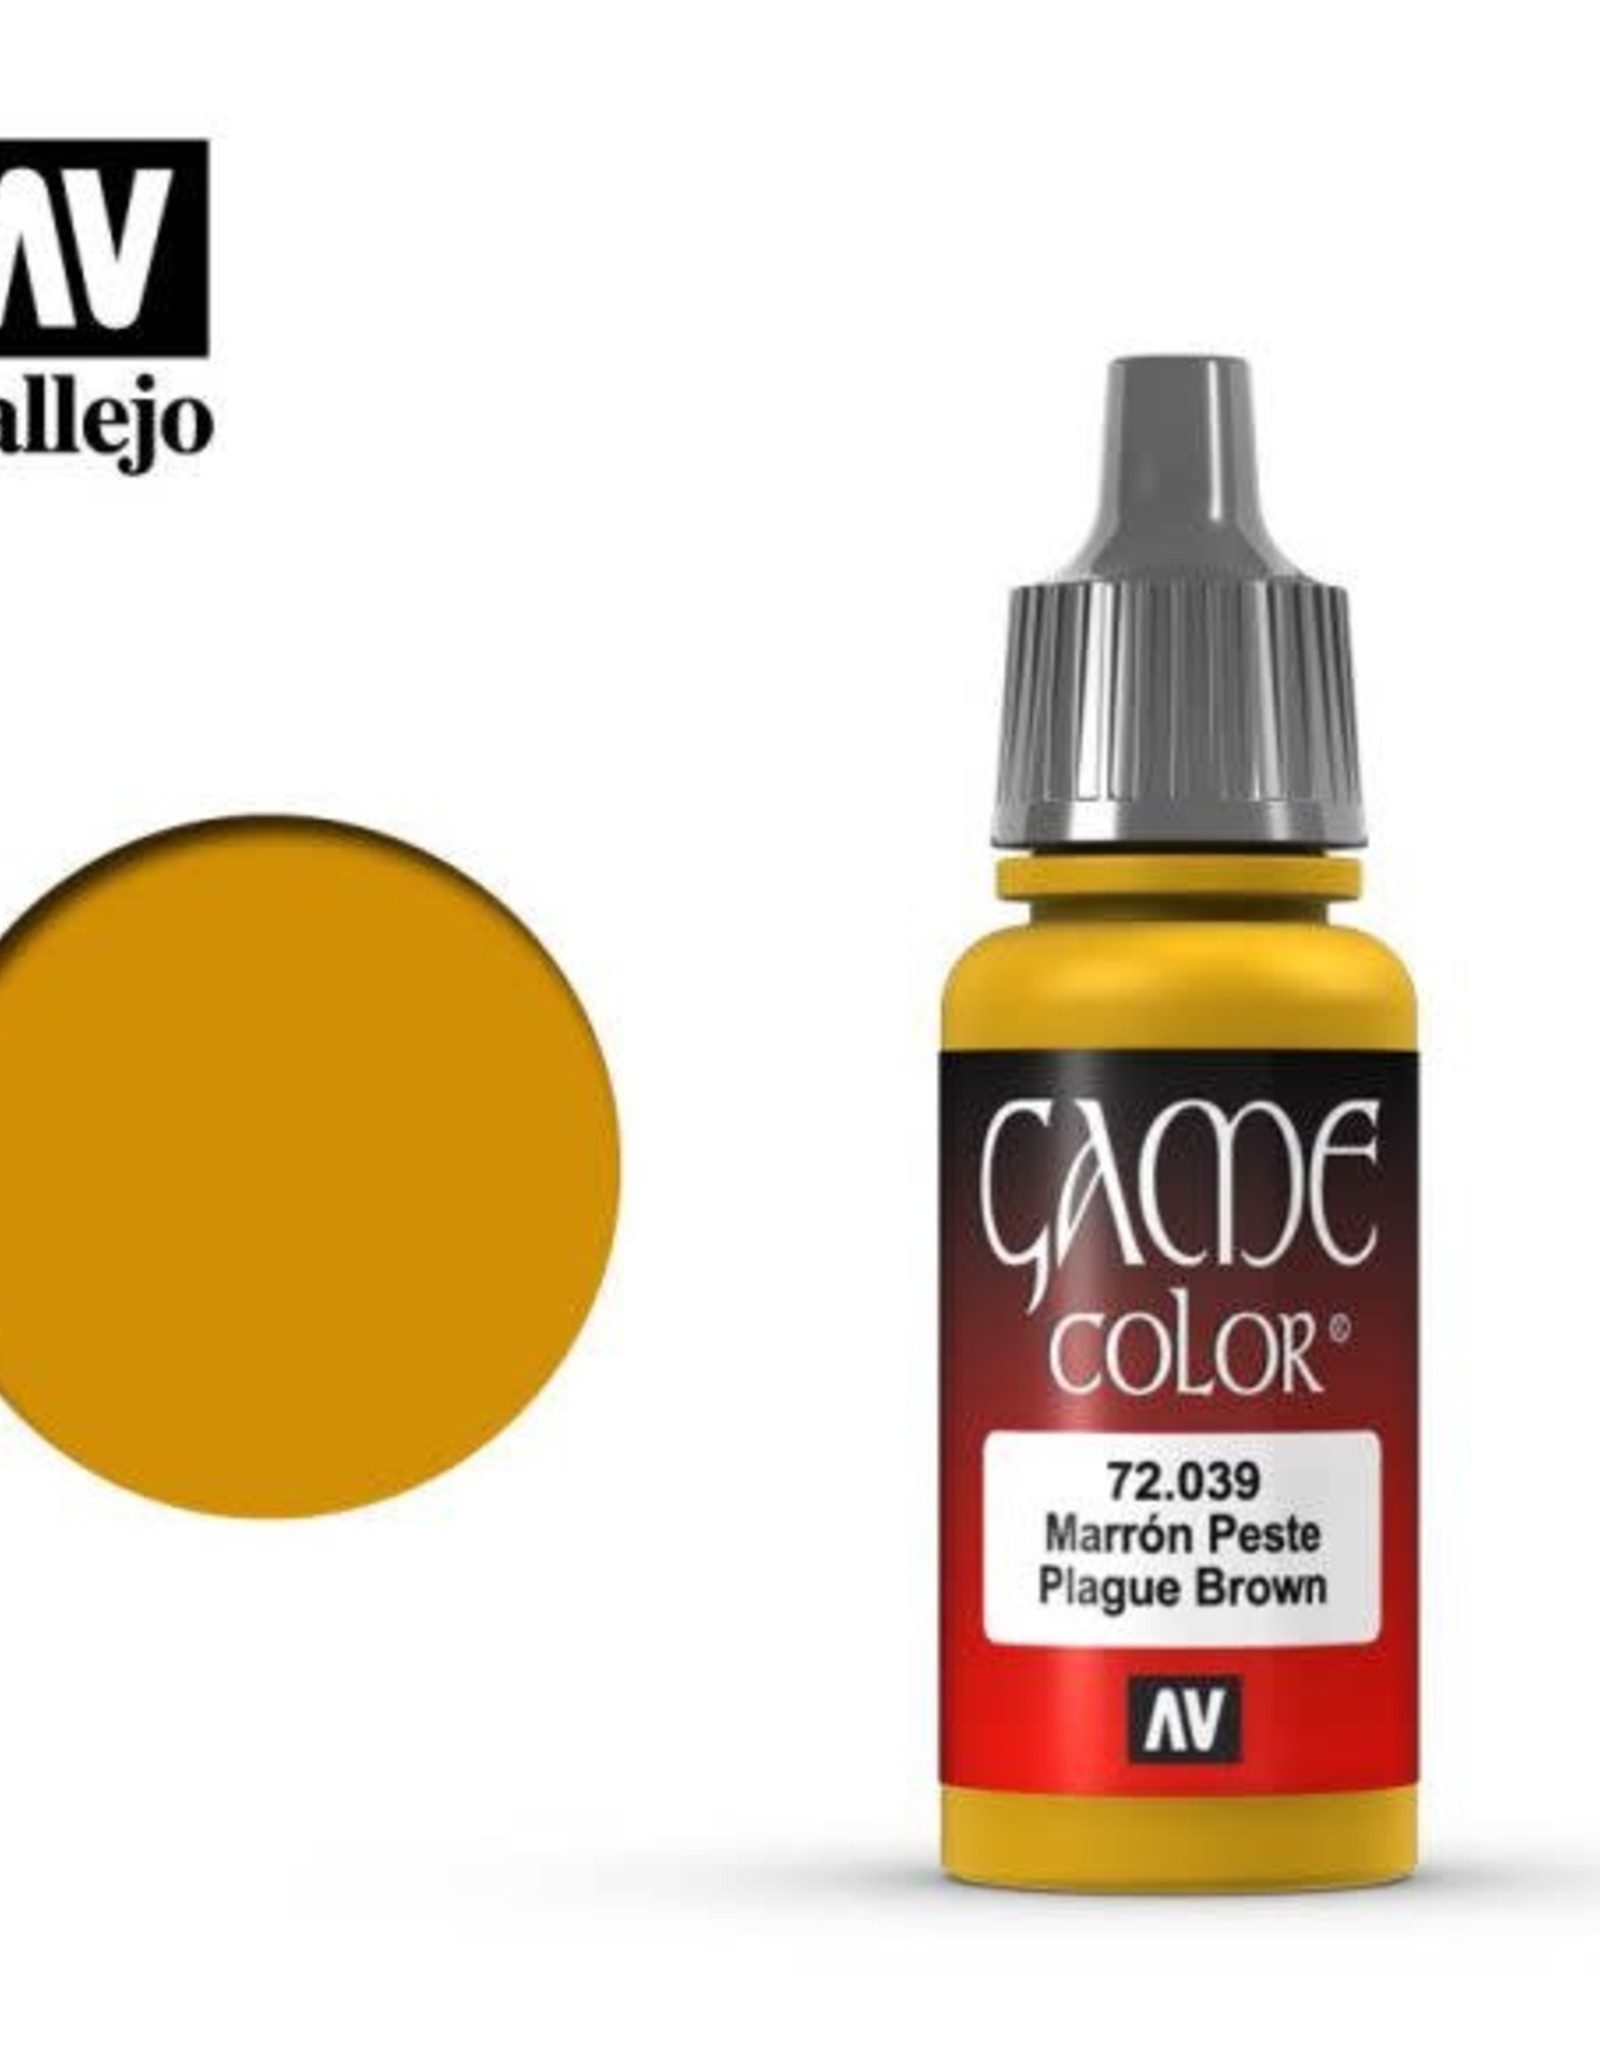 Acrylicos Vallejo AV GC: Plague Brown 72.039 (17 ml)